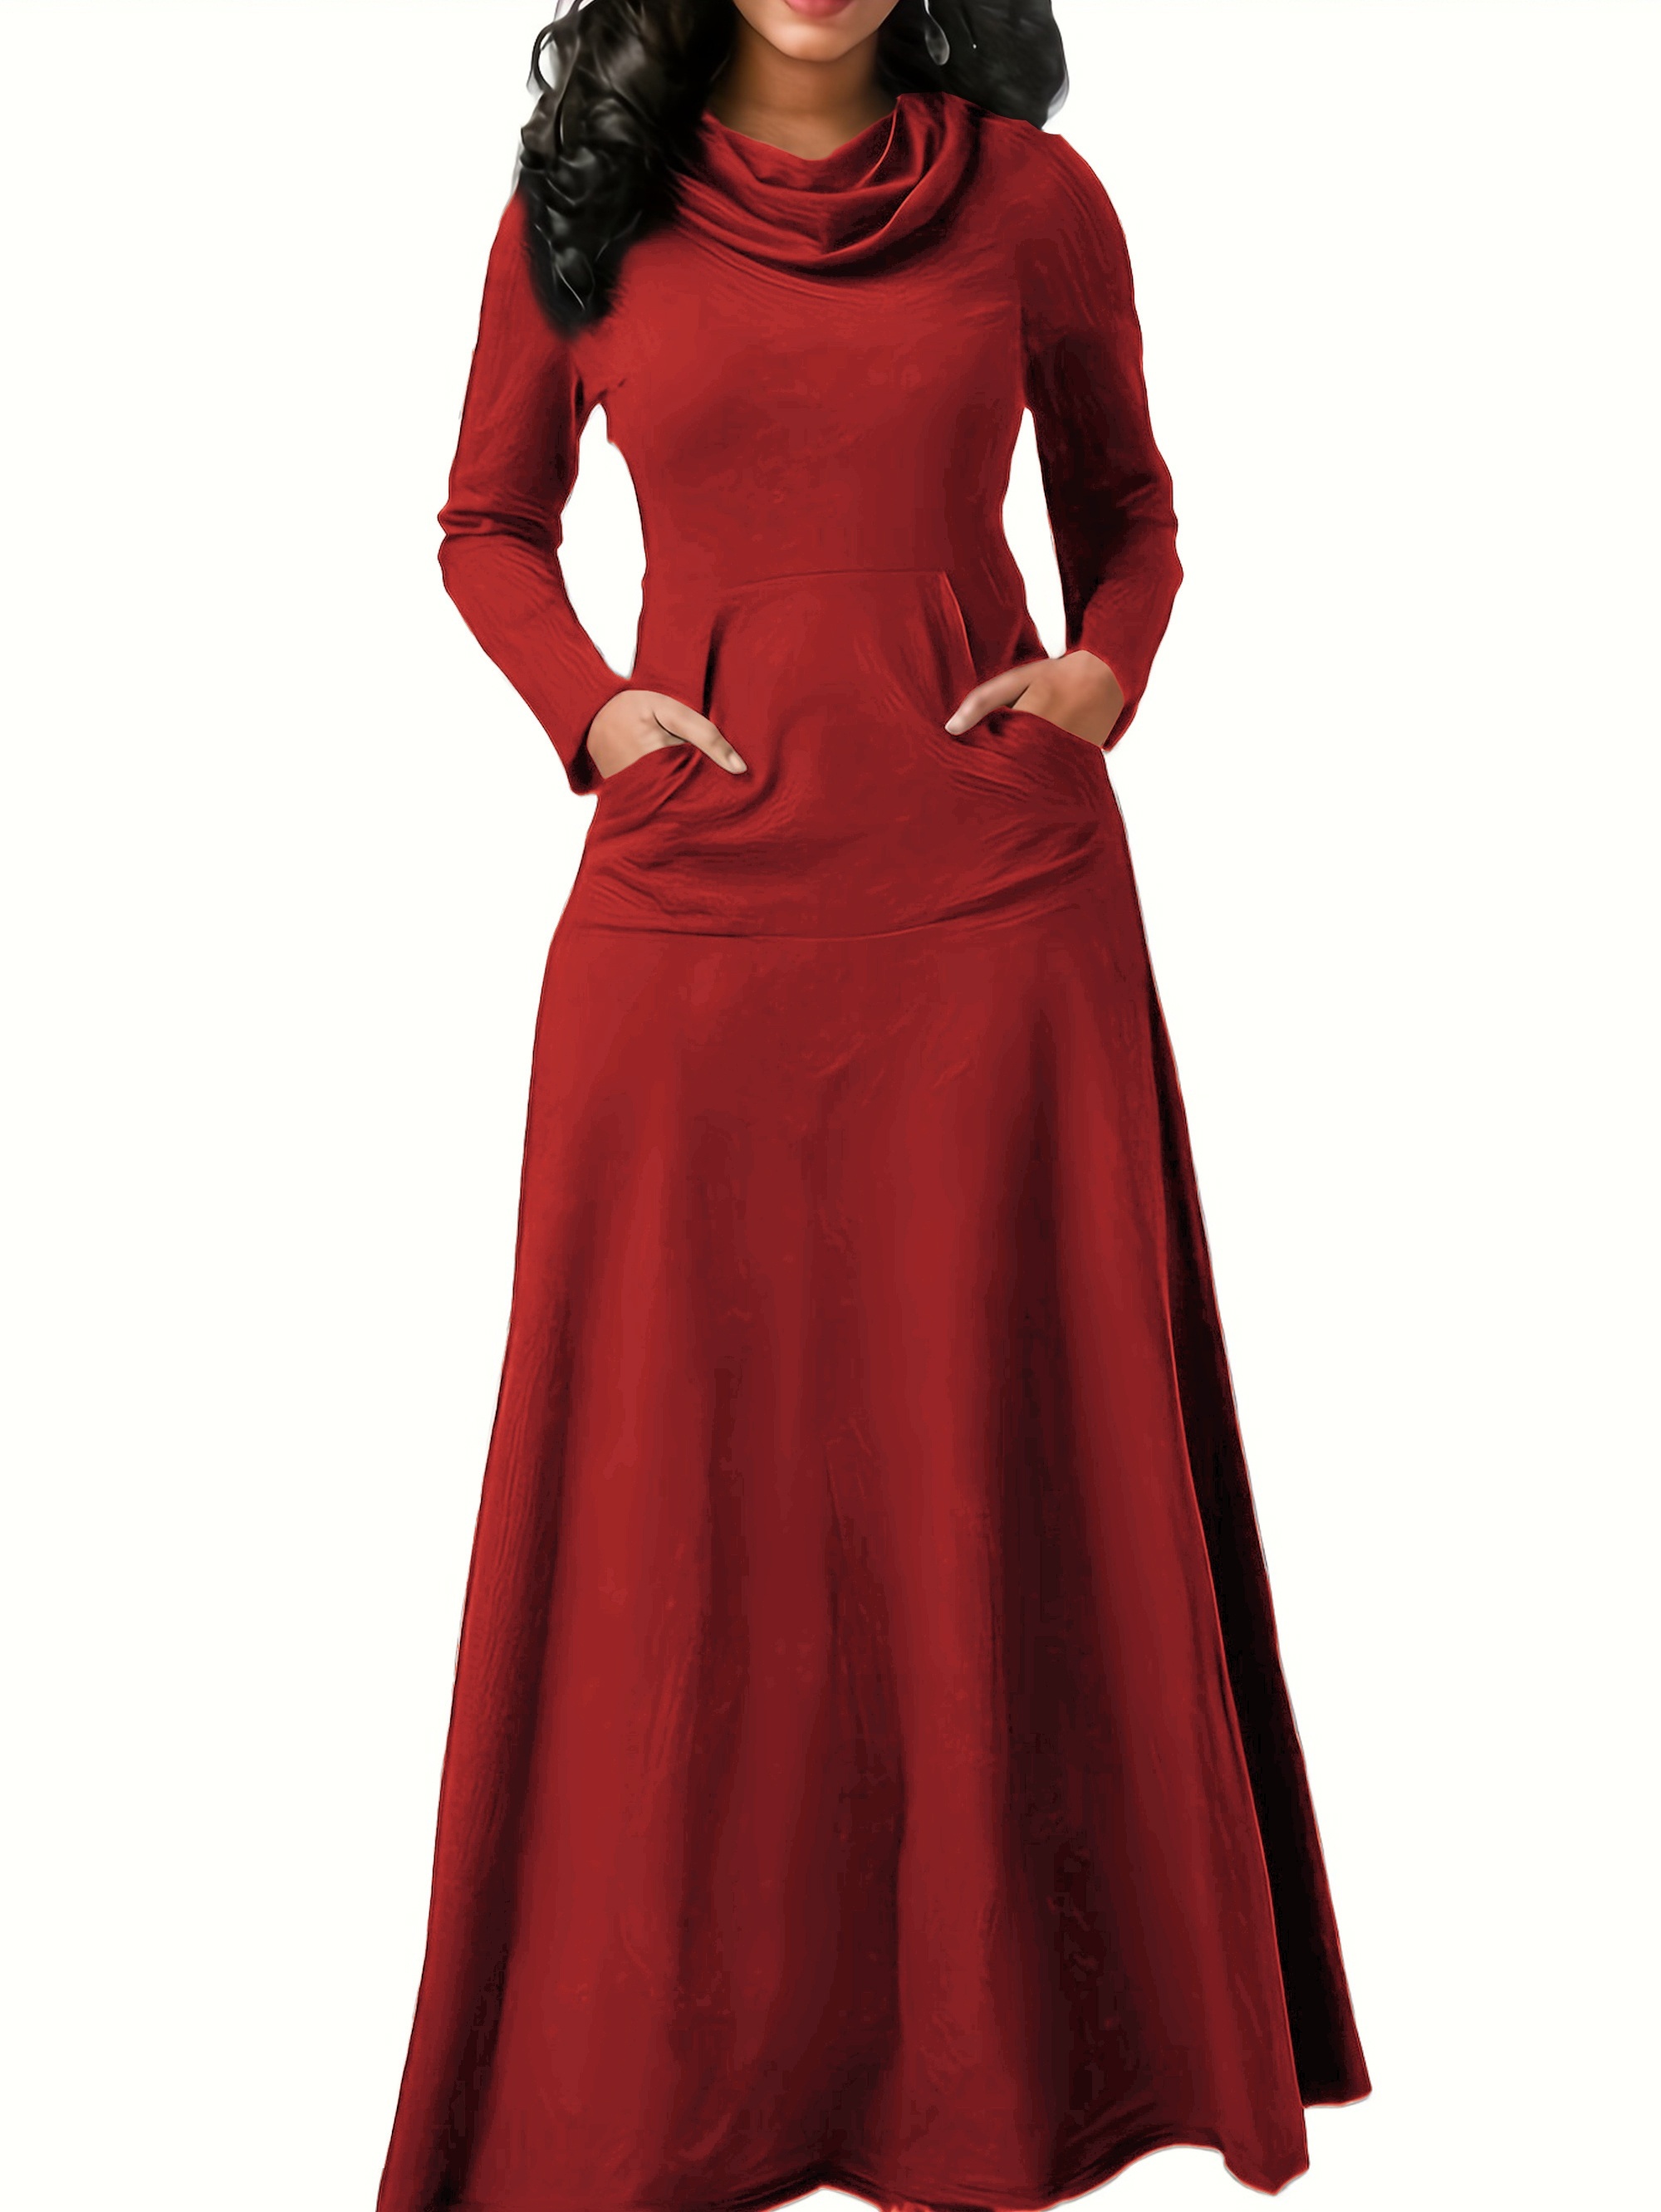 فستان كاجوال بمقاس كبير، فستان نسائي طويل الأكمام بياقة مدورة وقابل للتمدد مع جيوب